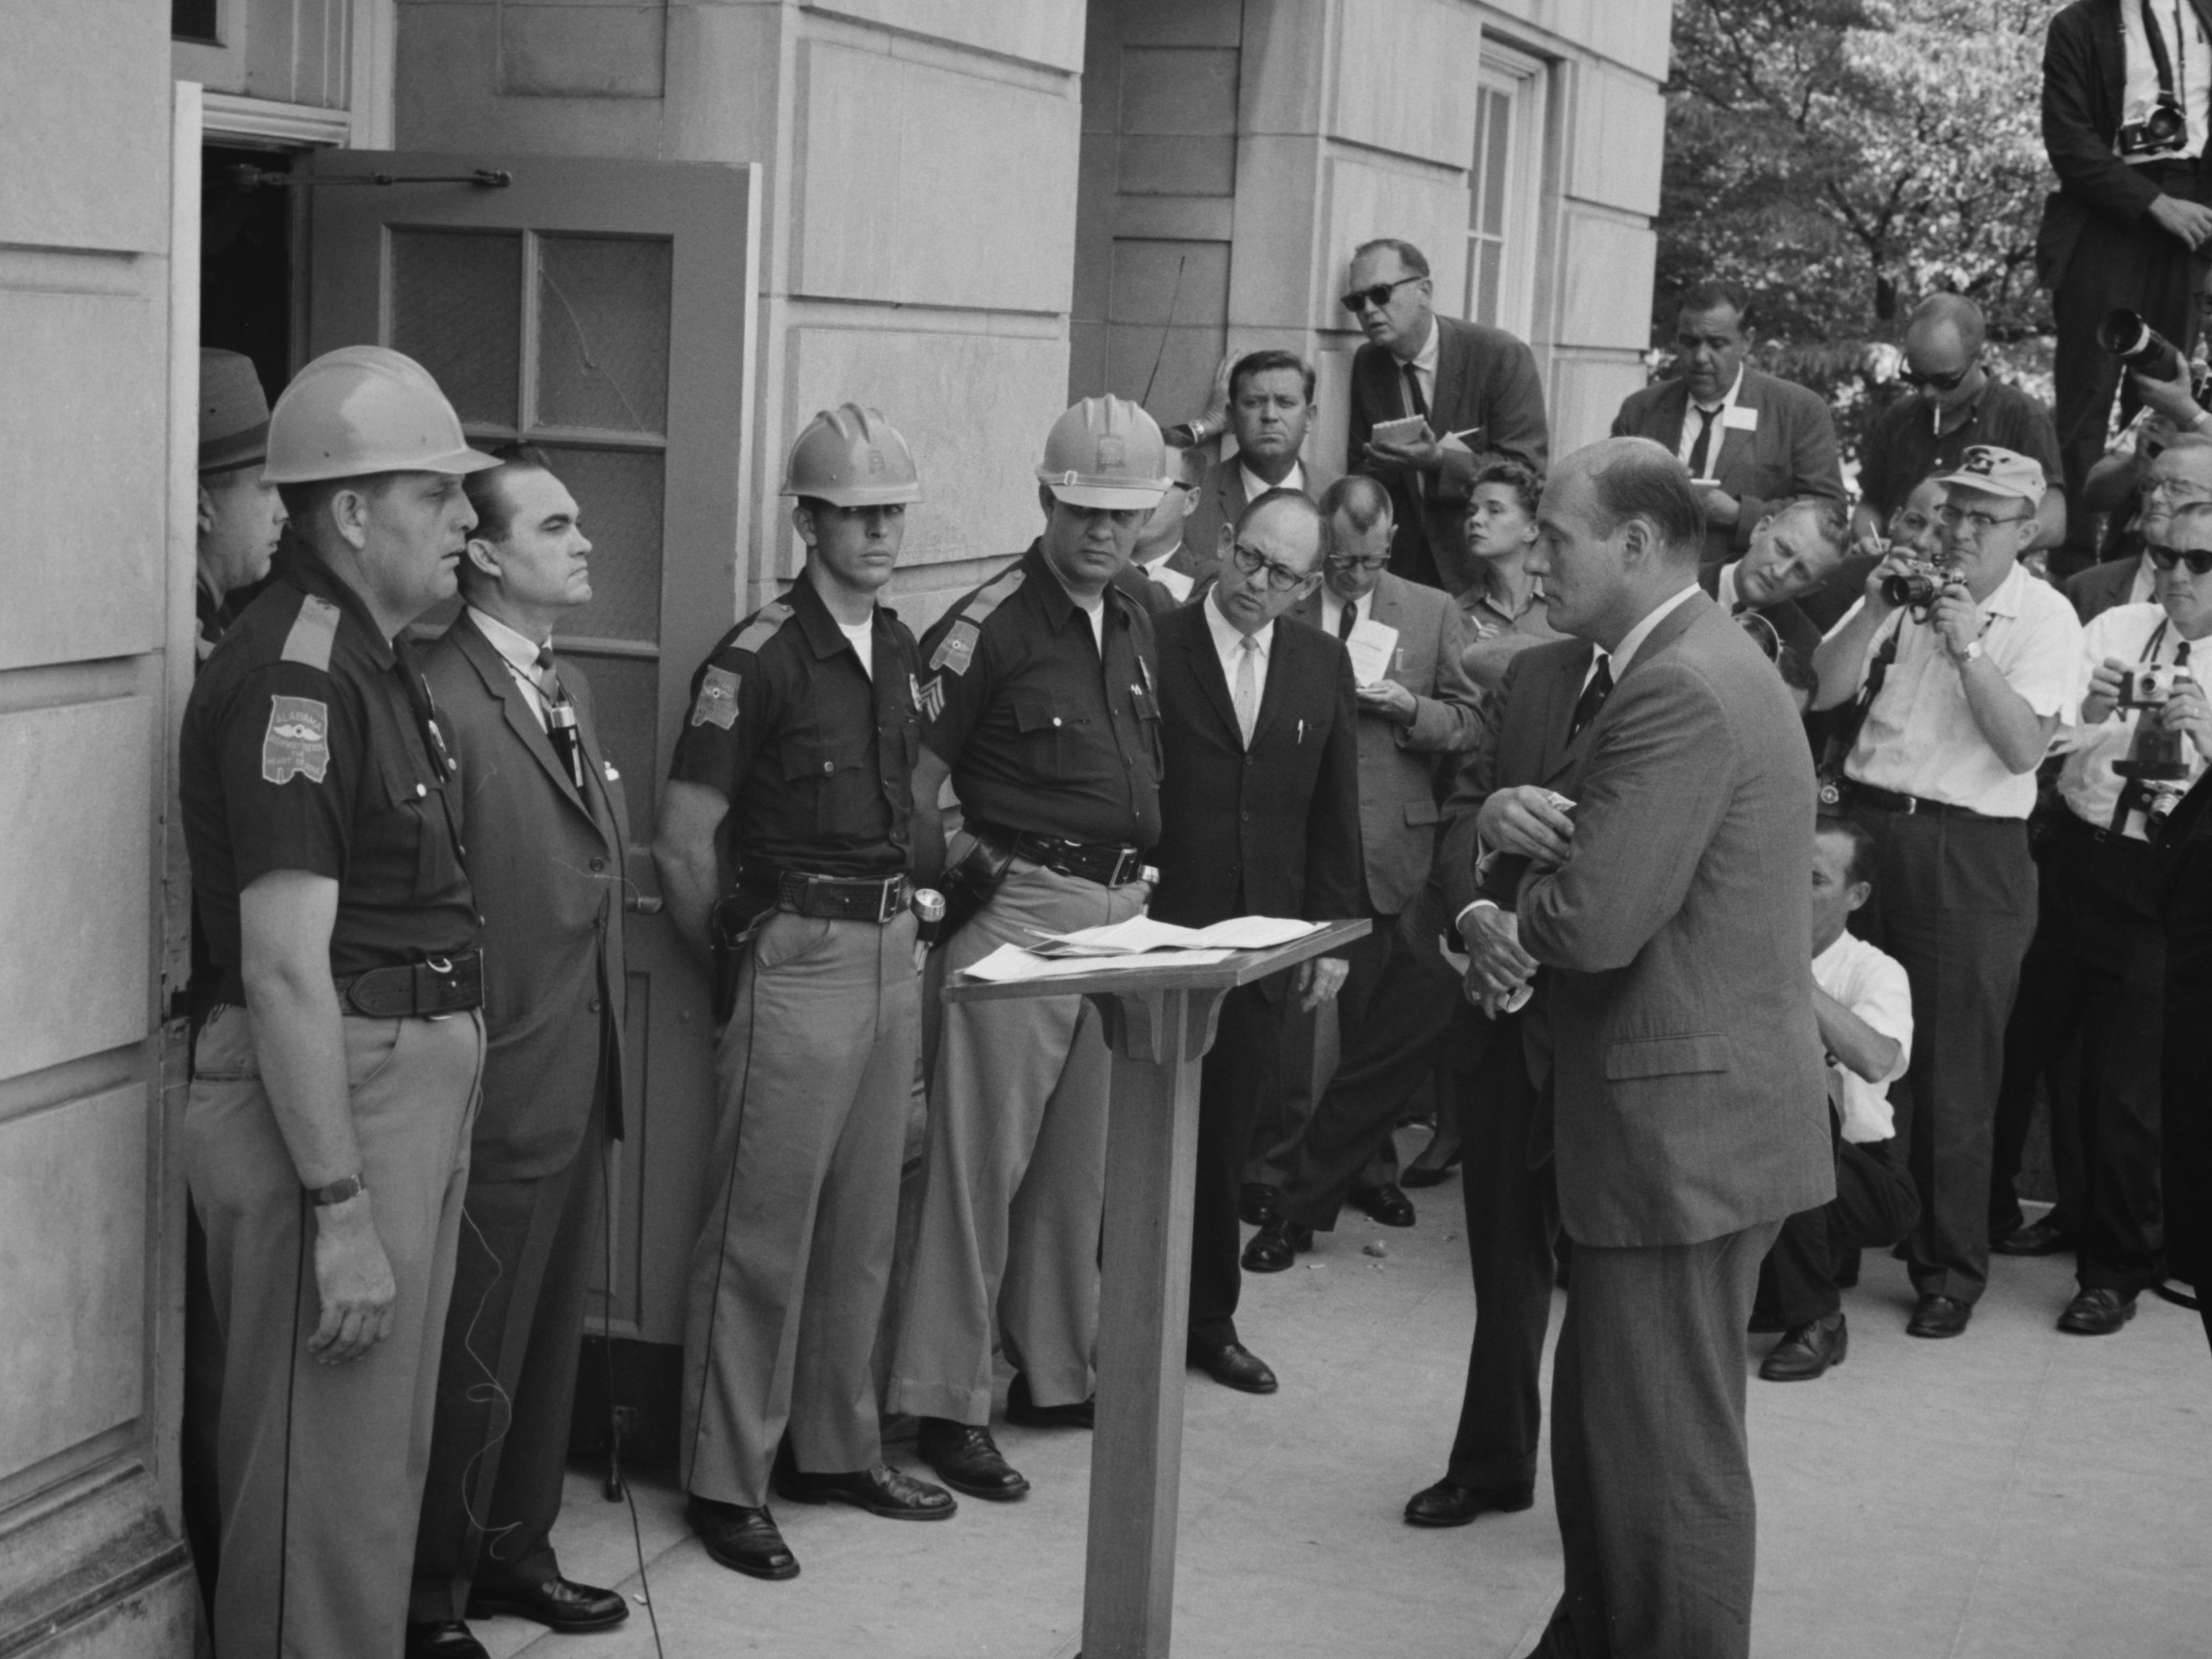 George Wallace versucht, die Integration an der University of Alabama zu blockieren, steht trotzig an einer Tür und wird vom stellvertretenden US-Generalstaatsanwalt Nicholas Katzenbach konfrontiert, 11. Juni 1963.